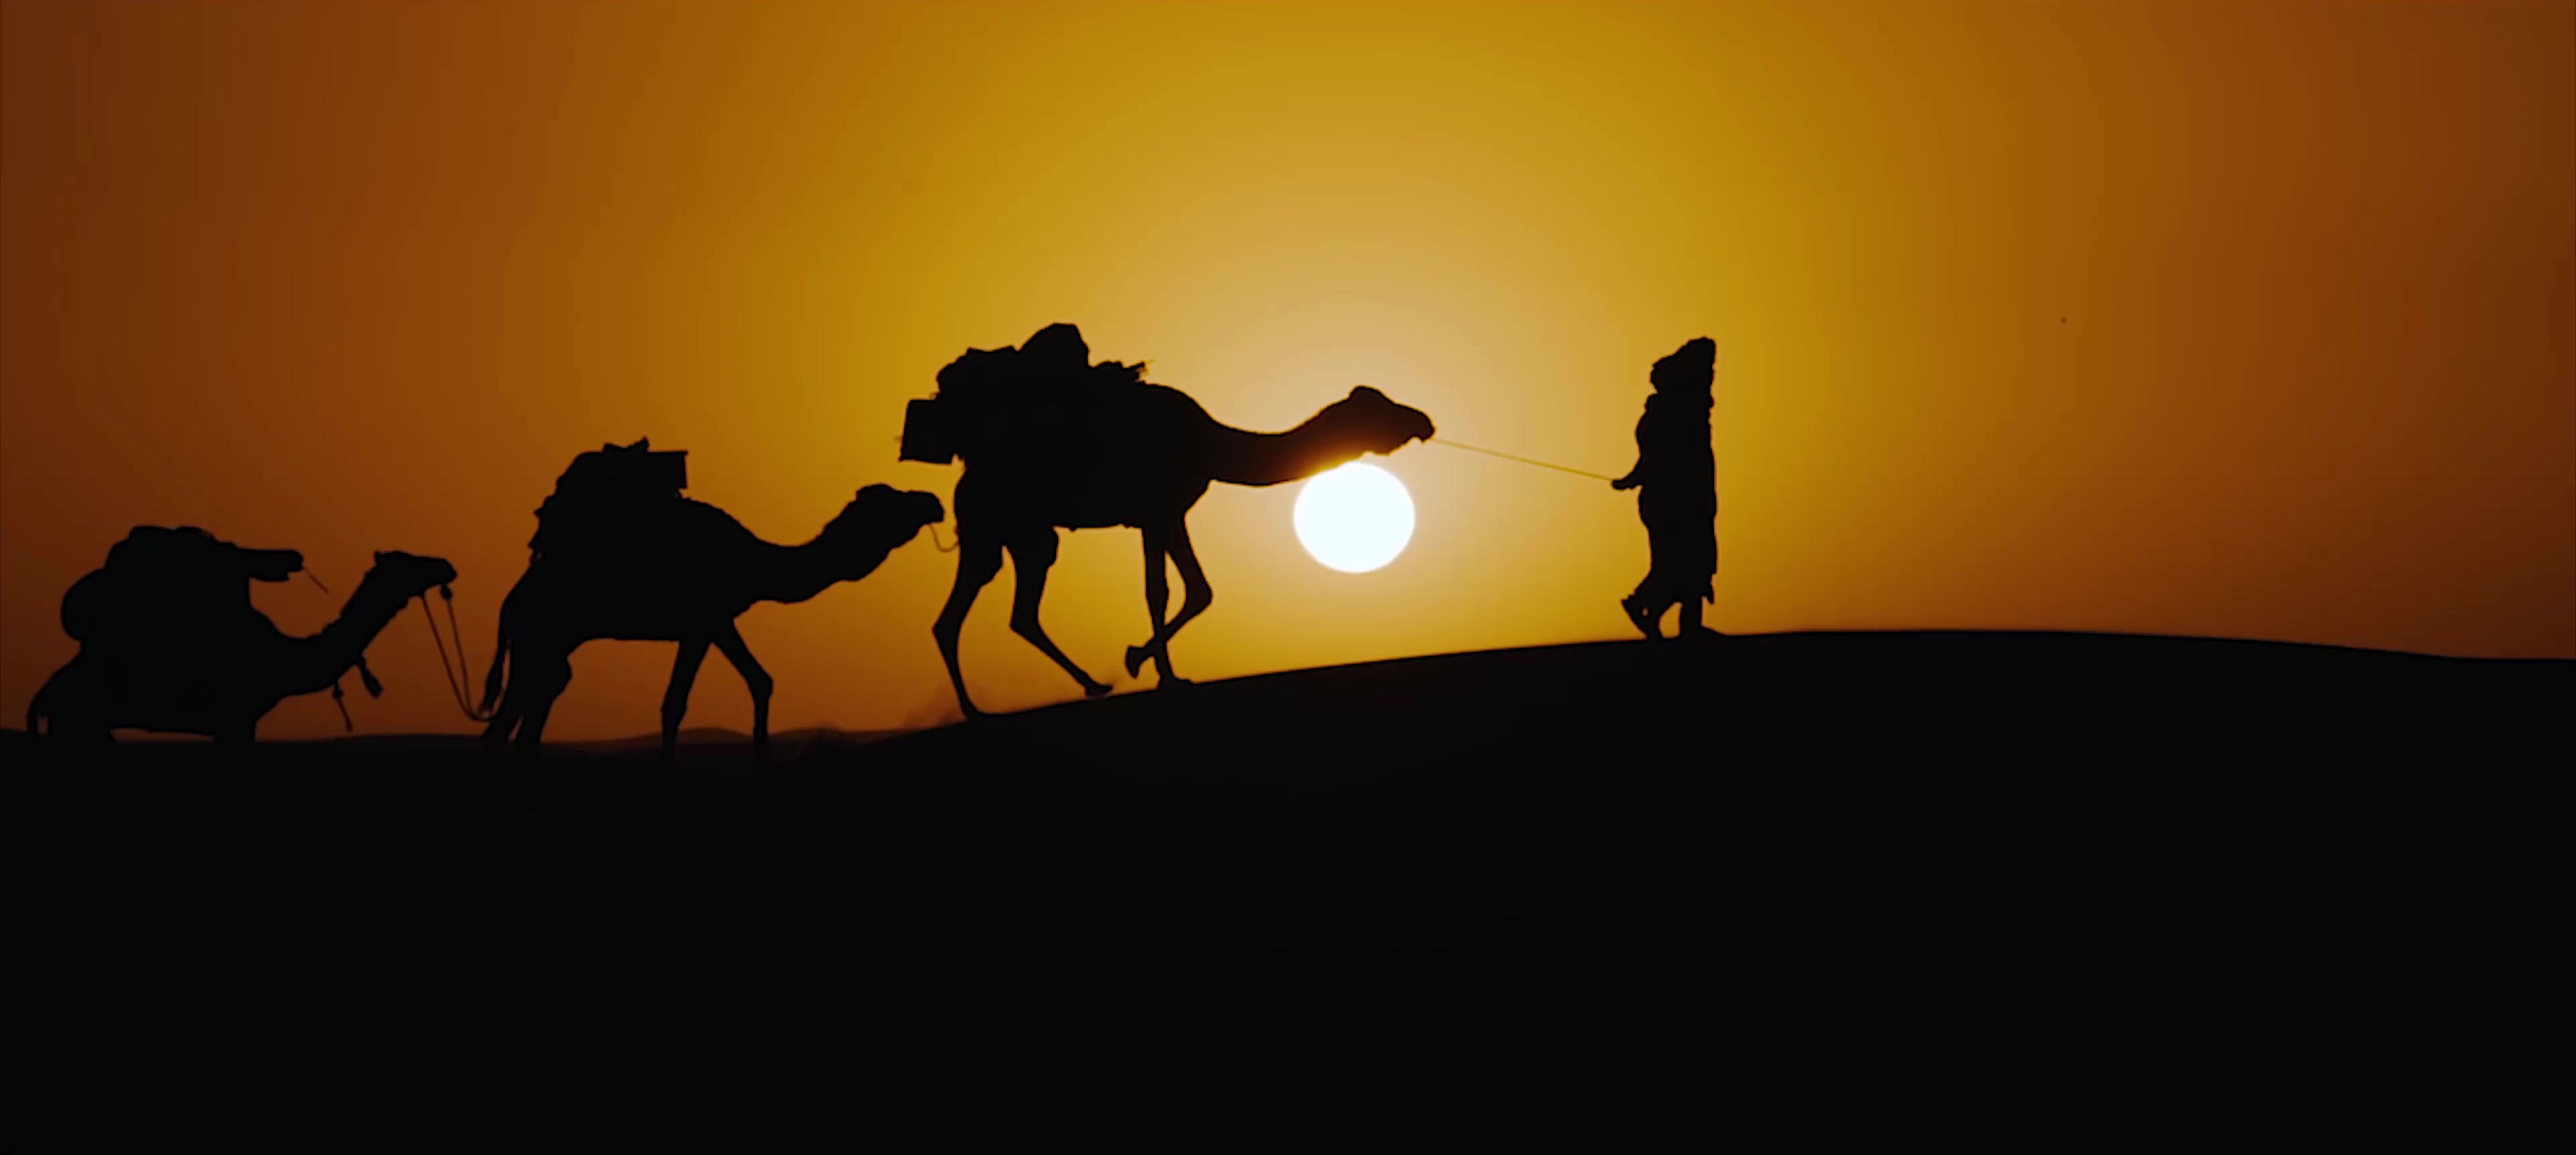 沙漠骆驼视频素材,延时摄影视频素材下载,高清3840X2160视频素材下载,凌点视频素材网,编号:392667